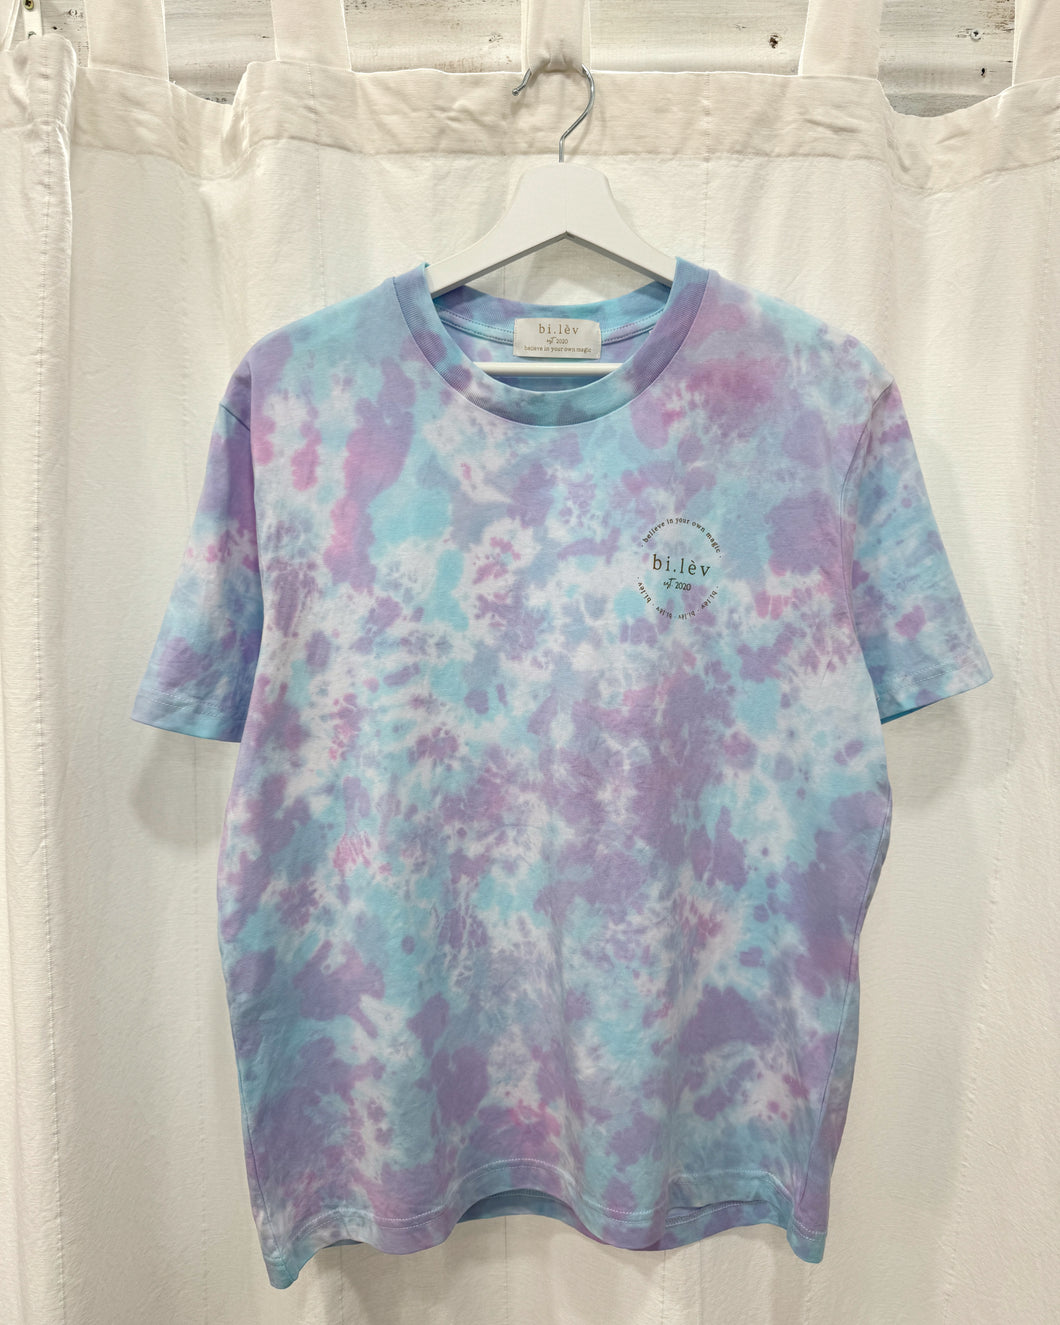 PASTEL CANDY - Tie Dye Organic Cotton T-shirt